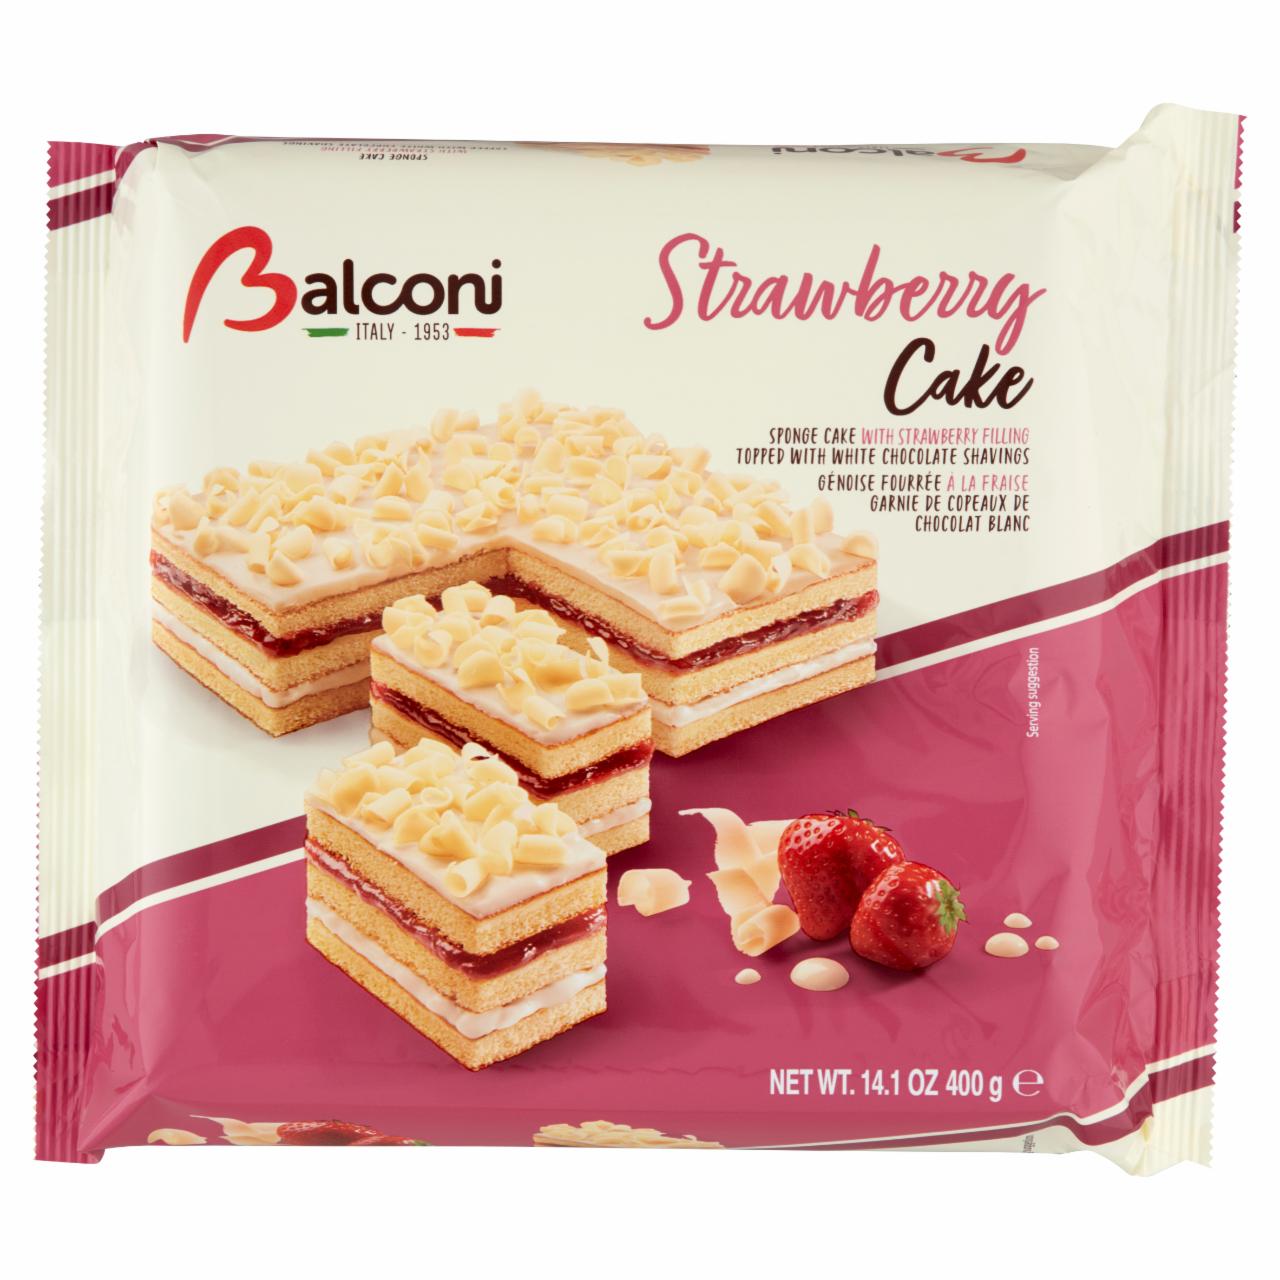 Képek - Balconi Strawberry Cake piskóta torta epres ízű és tejes töltelékkel fehér csokoládéval szórva 400 g